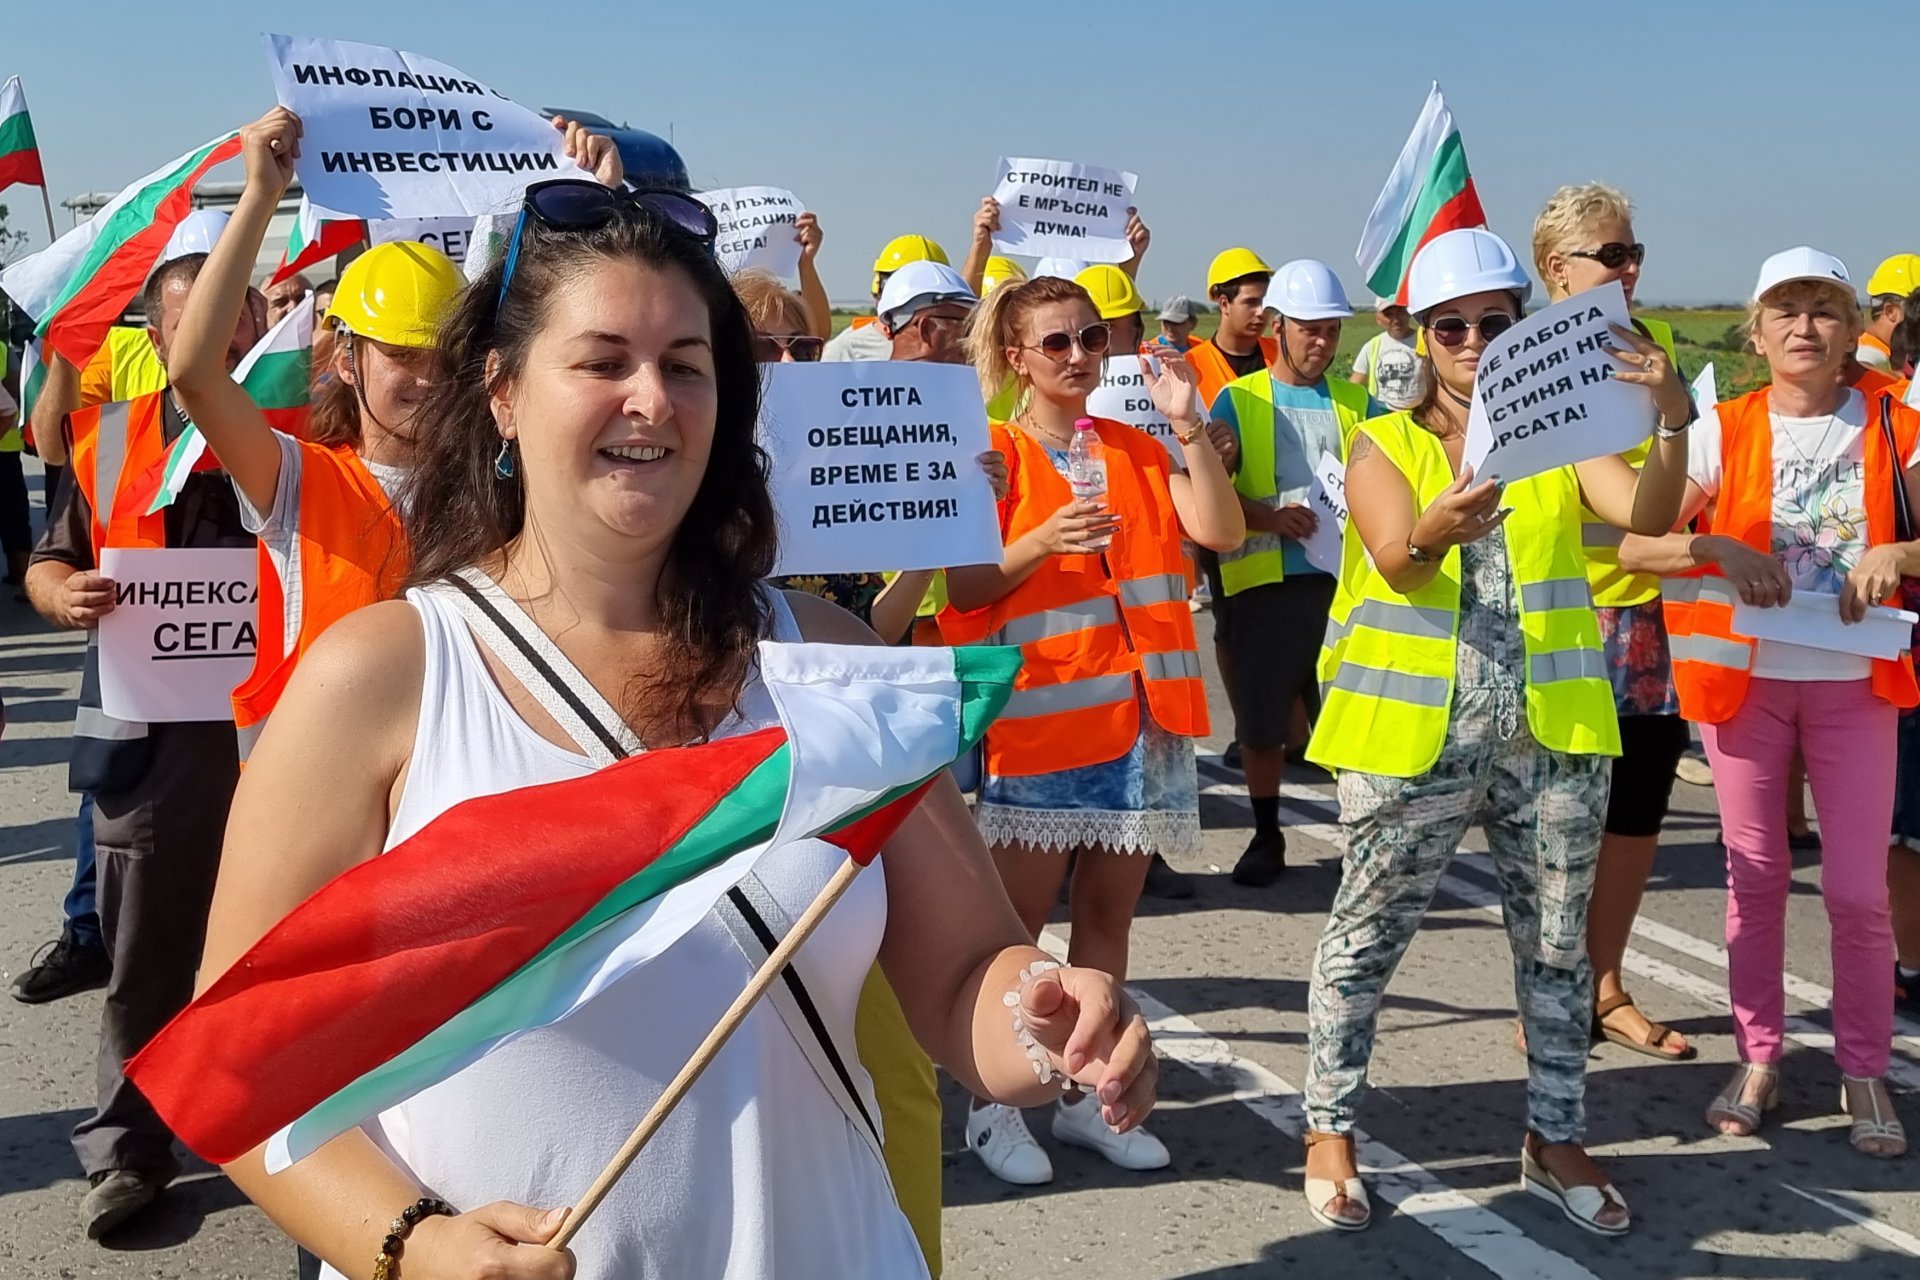 Пътностроителни фирми от русенско се включиха в националния протест на Българската браншова камара "Пътища", като блокираха международния път Е79.